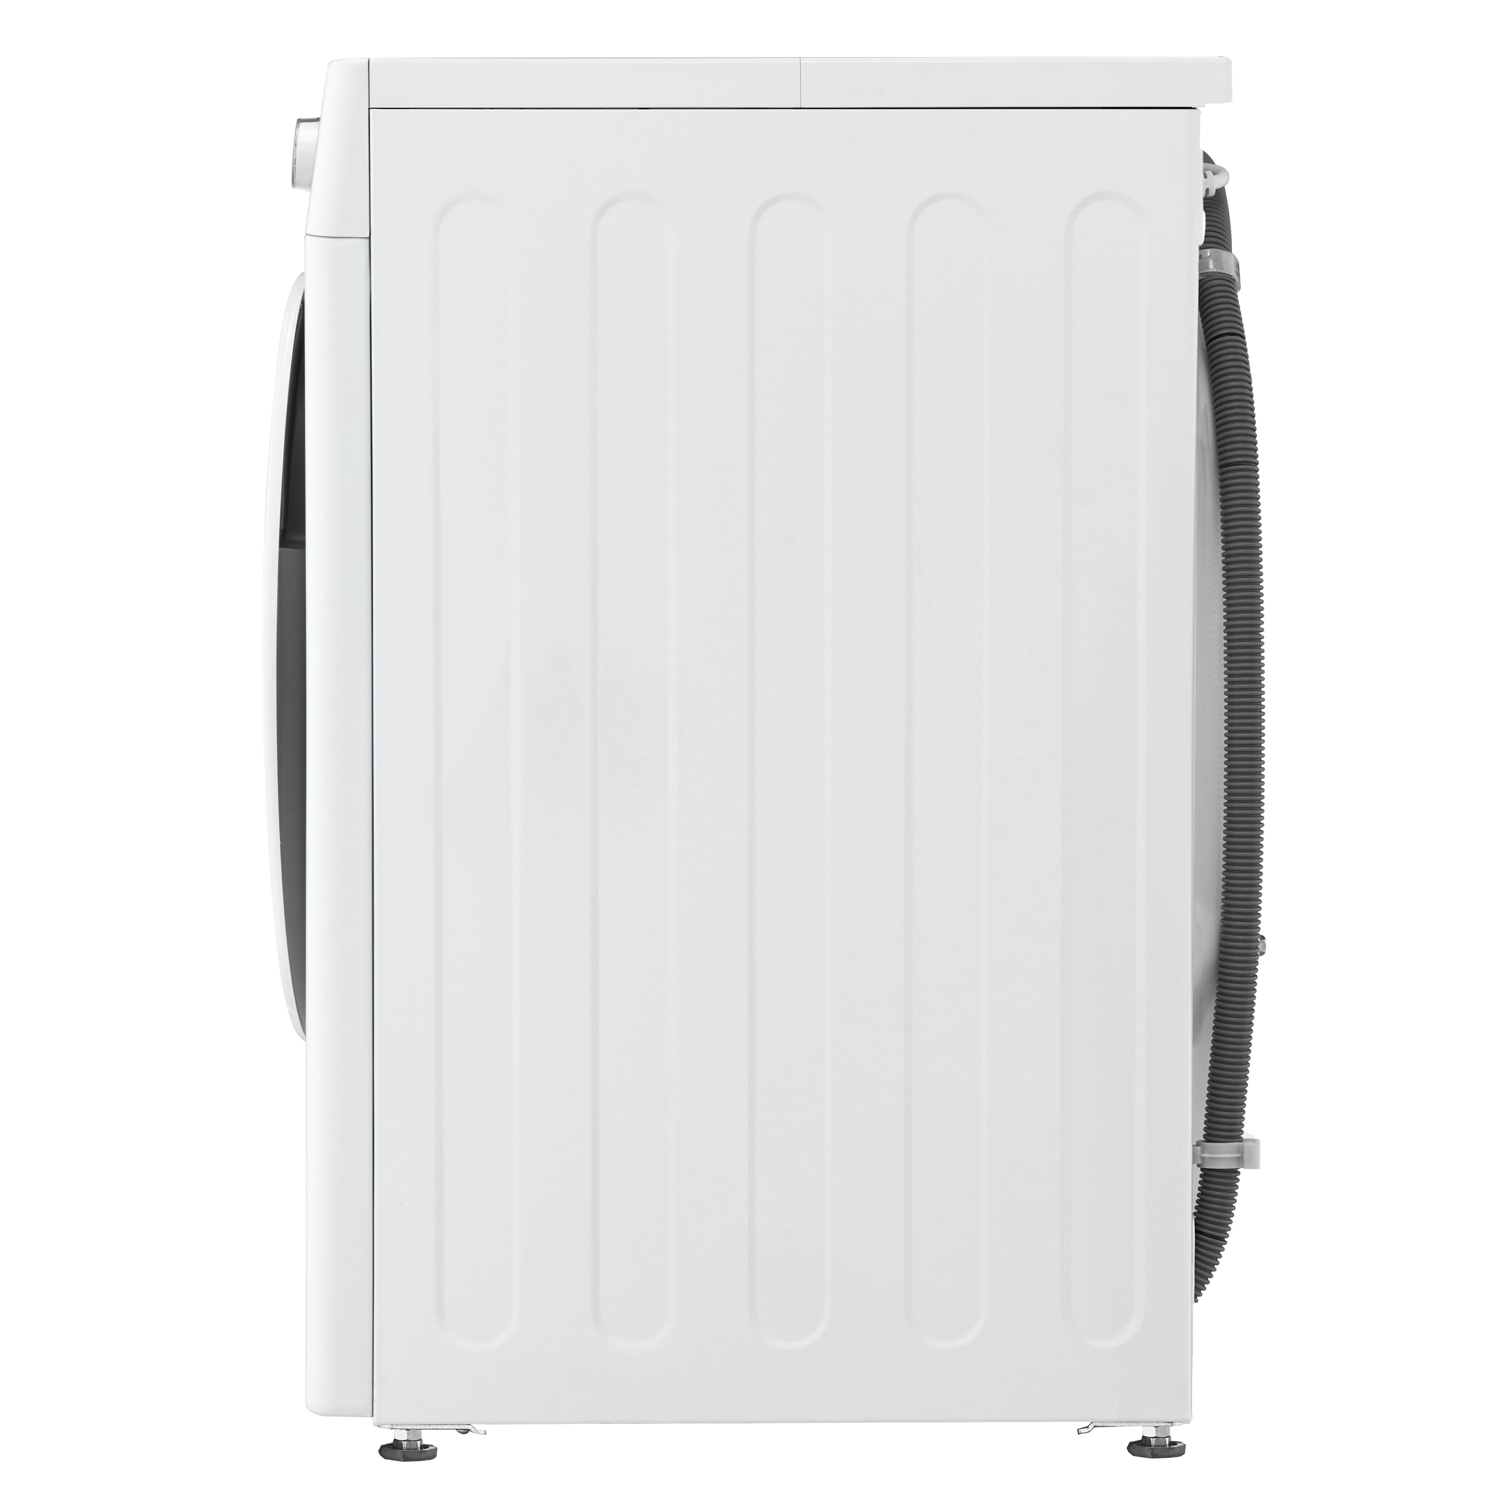 LG F4V309WNW 9kg 1400 Spin Washing Machine - White - 2